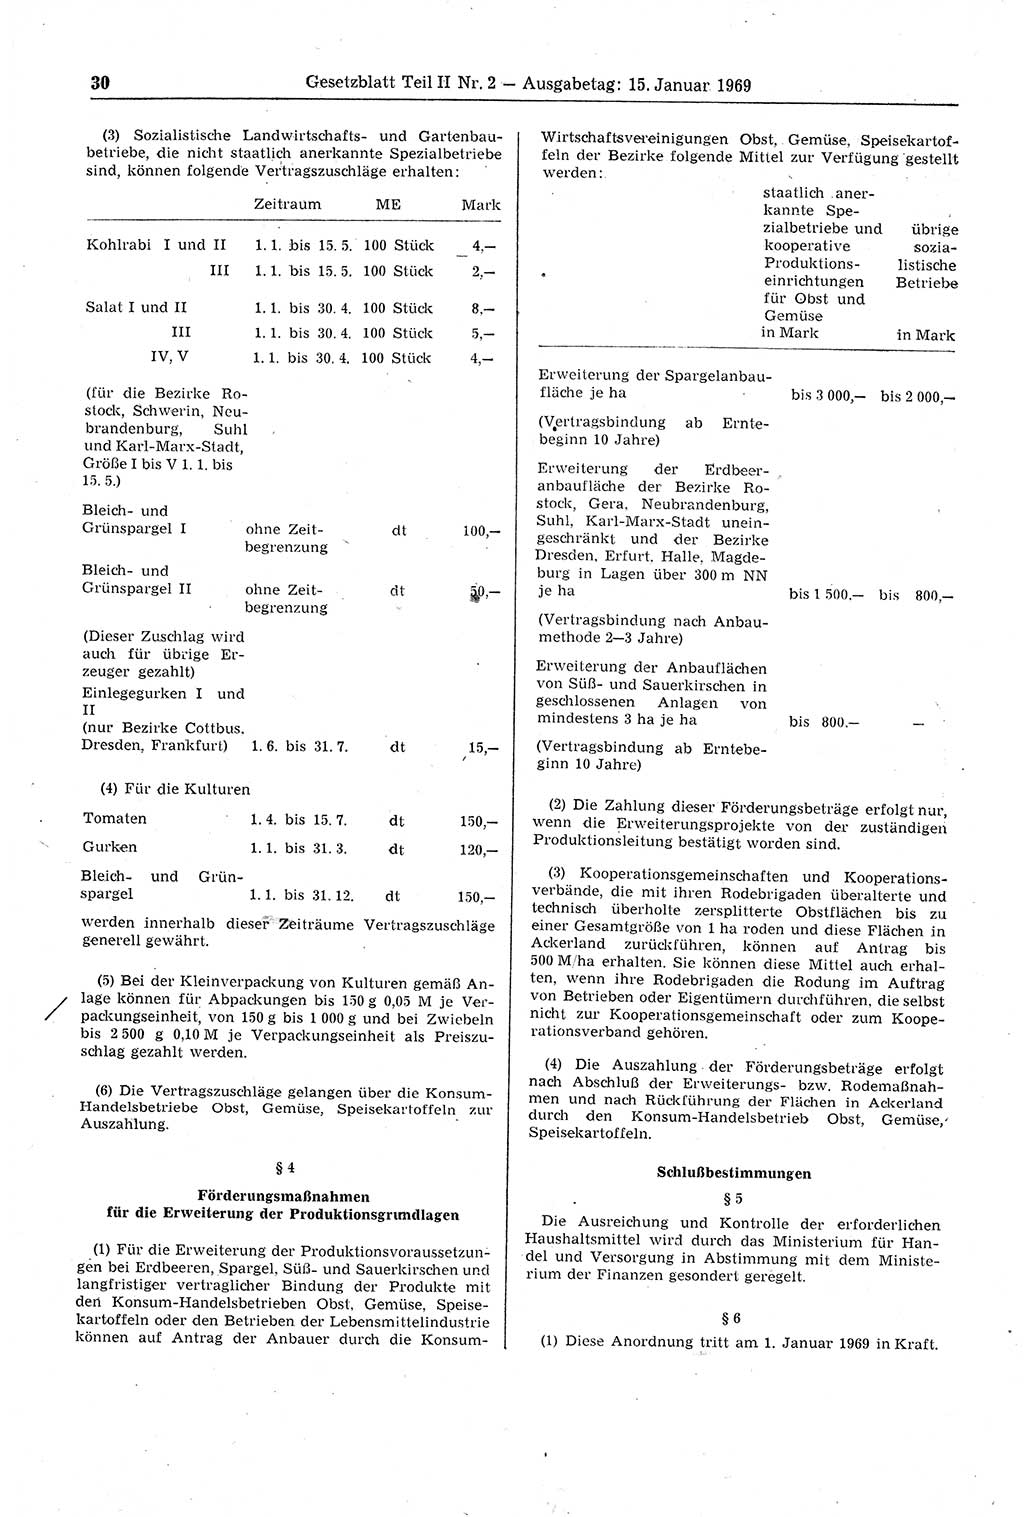 Gesetzblatt (GBl.) der Deutschen Demokratischen Republik (DDR) Teil ⅠⅠ 1969, Seite 30 (GBl. DDR ⅠⅠ 1969, S. 30)